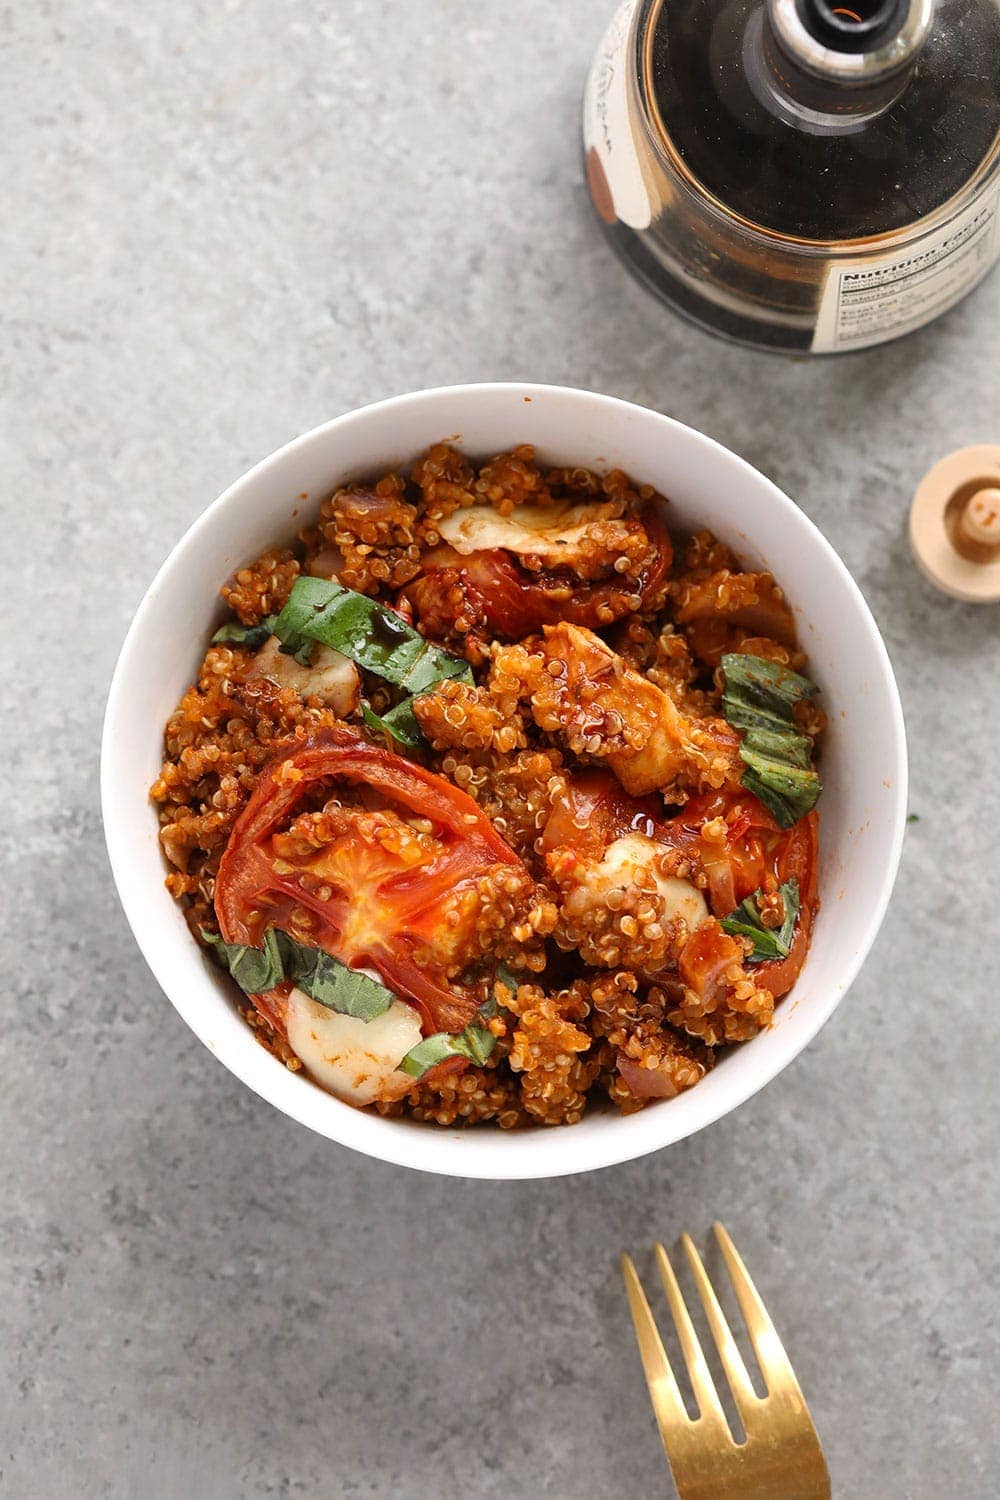 Tuscan chicken quinoa casserole in a bowl